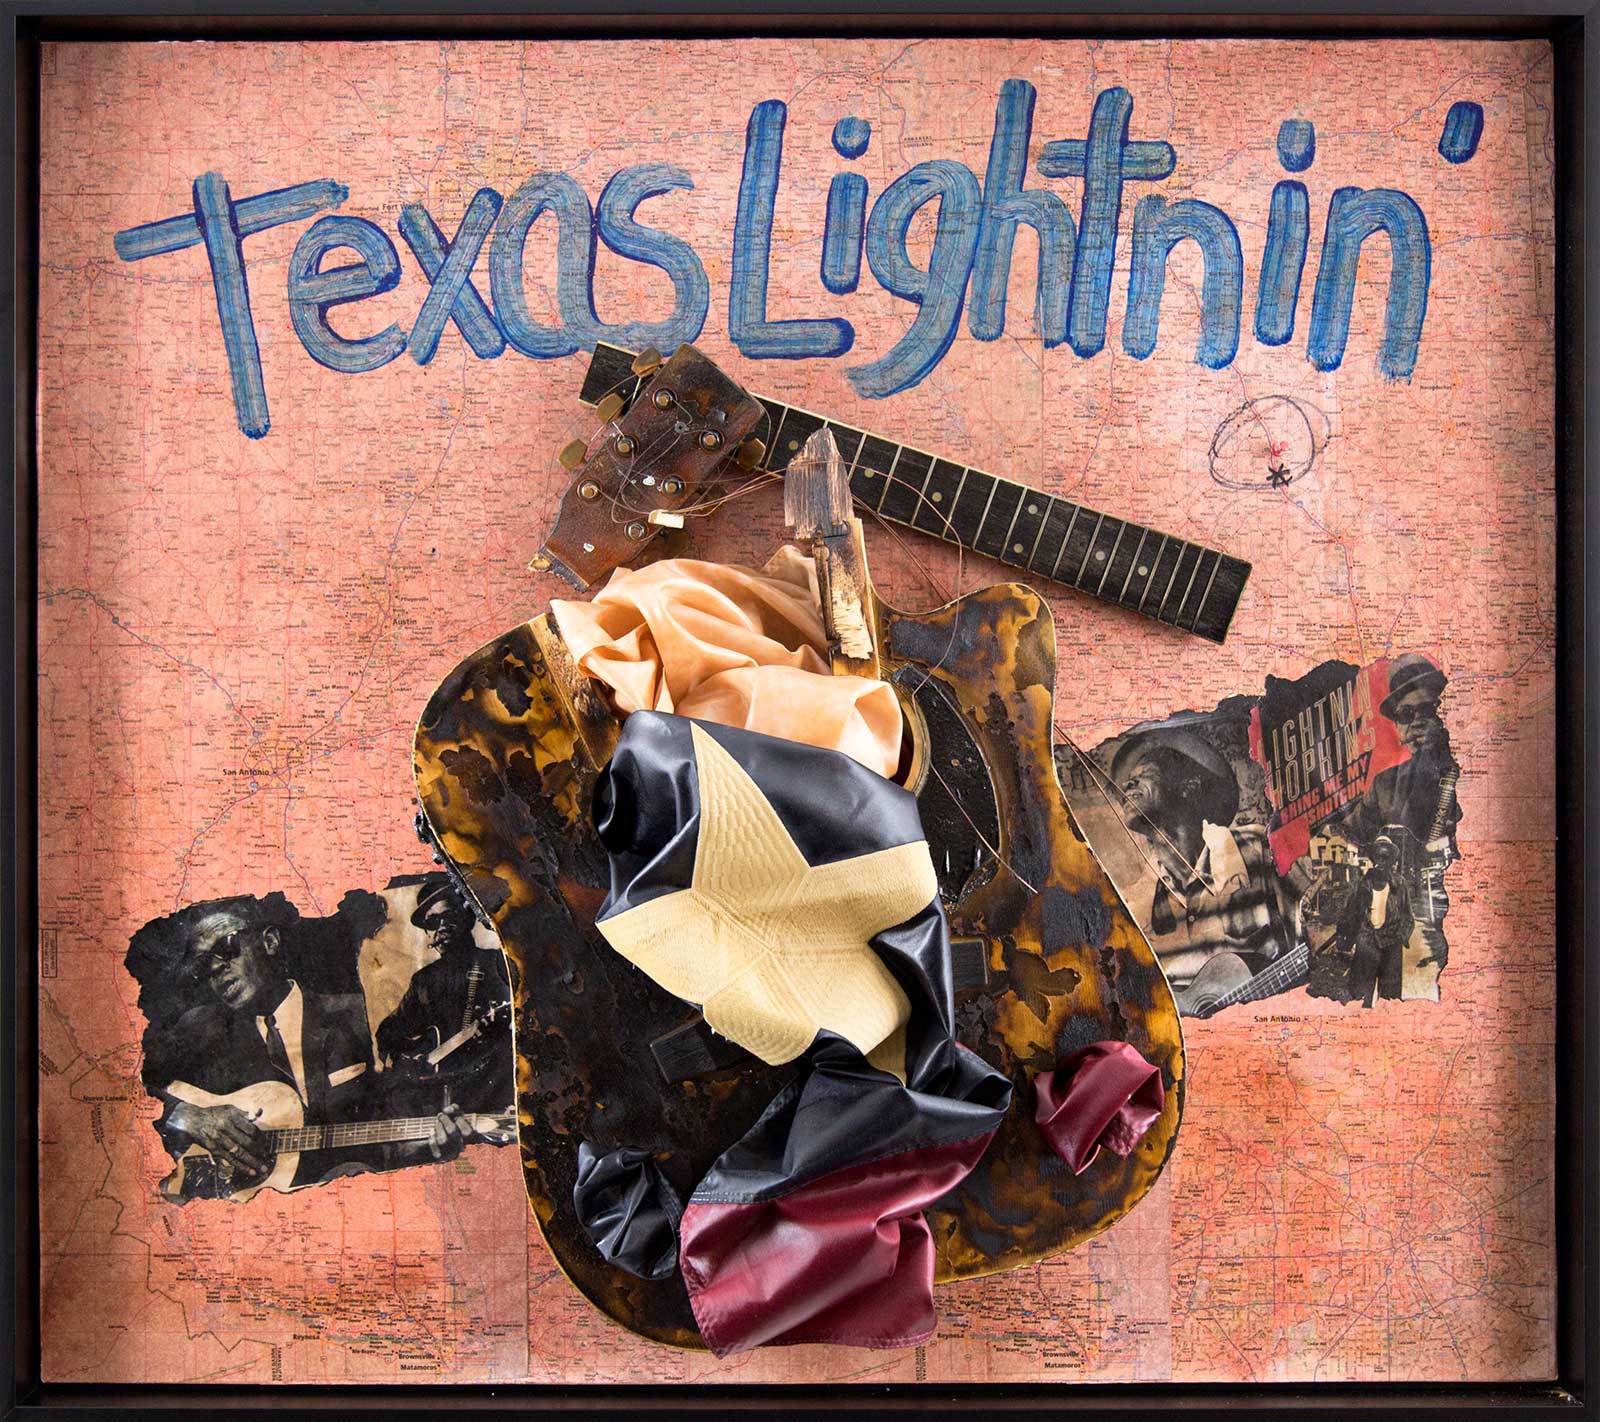 Texas Lightnin'